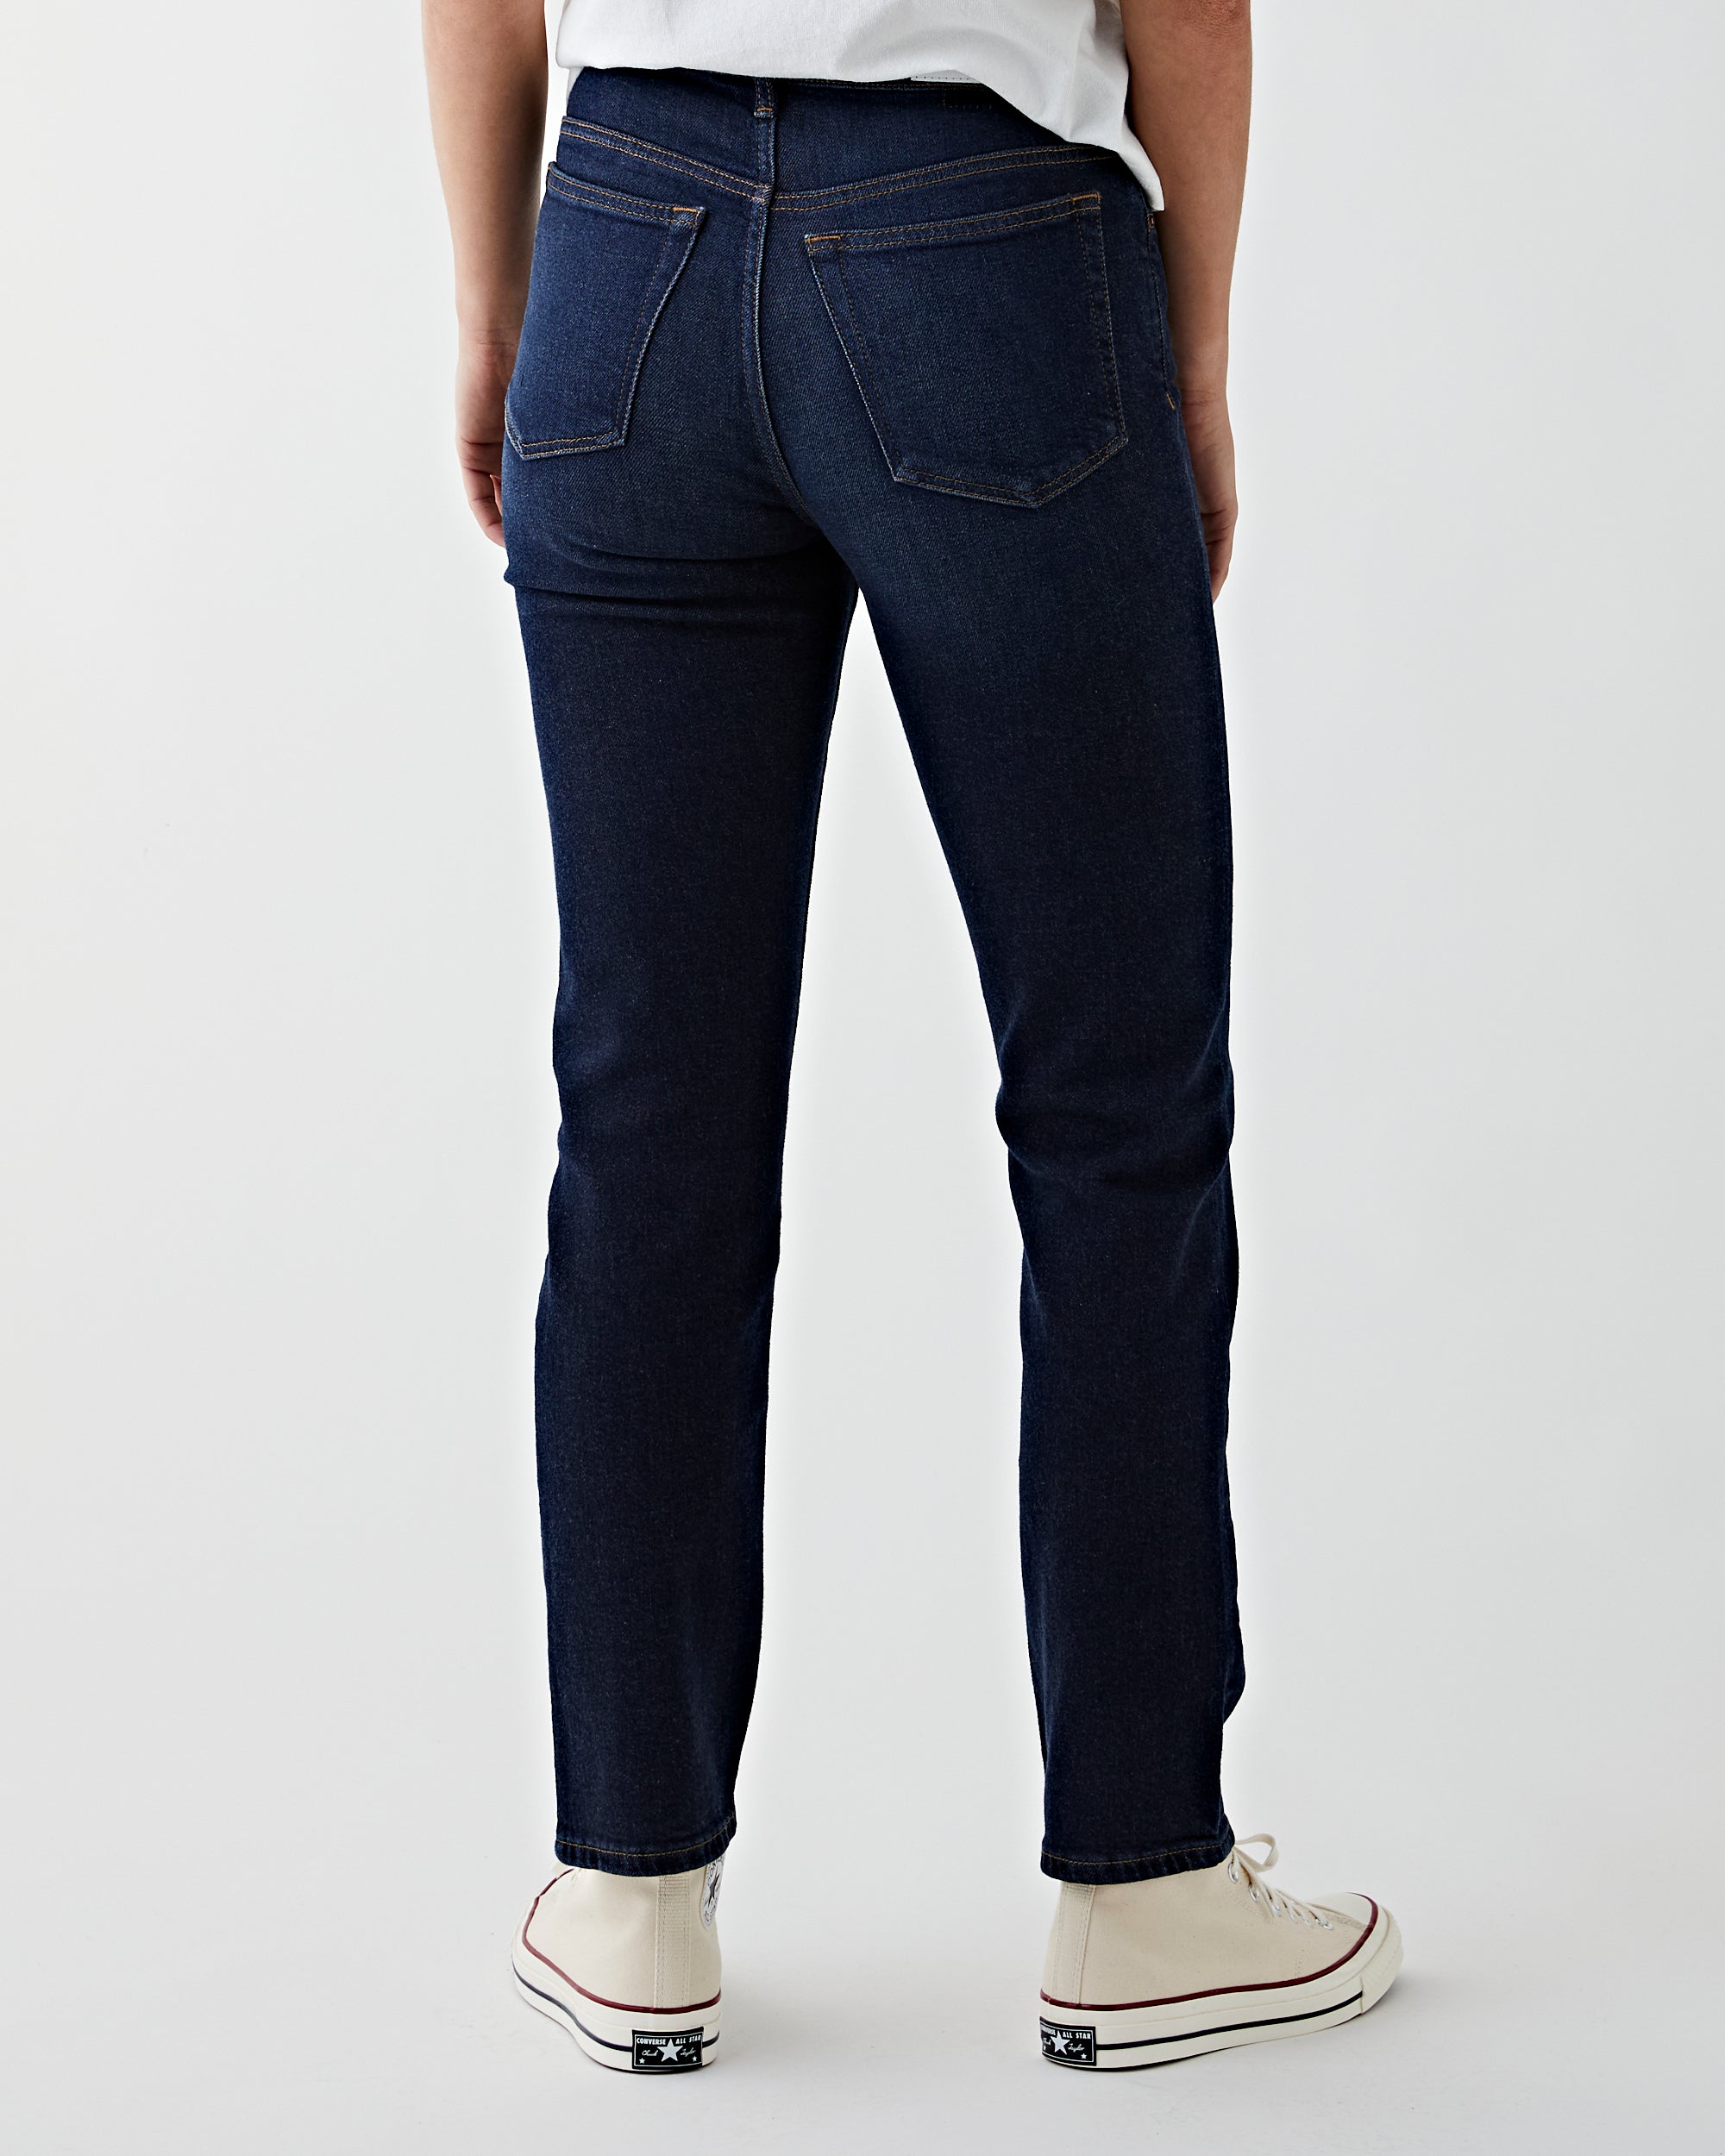 Vintage Gap Blue Jeans Size 28 -  Israel